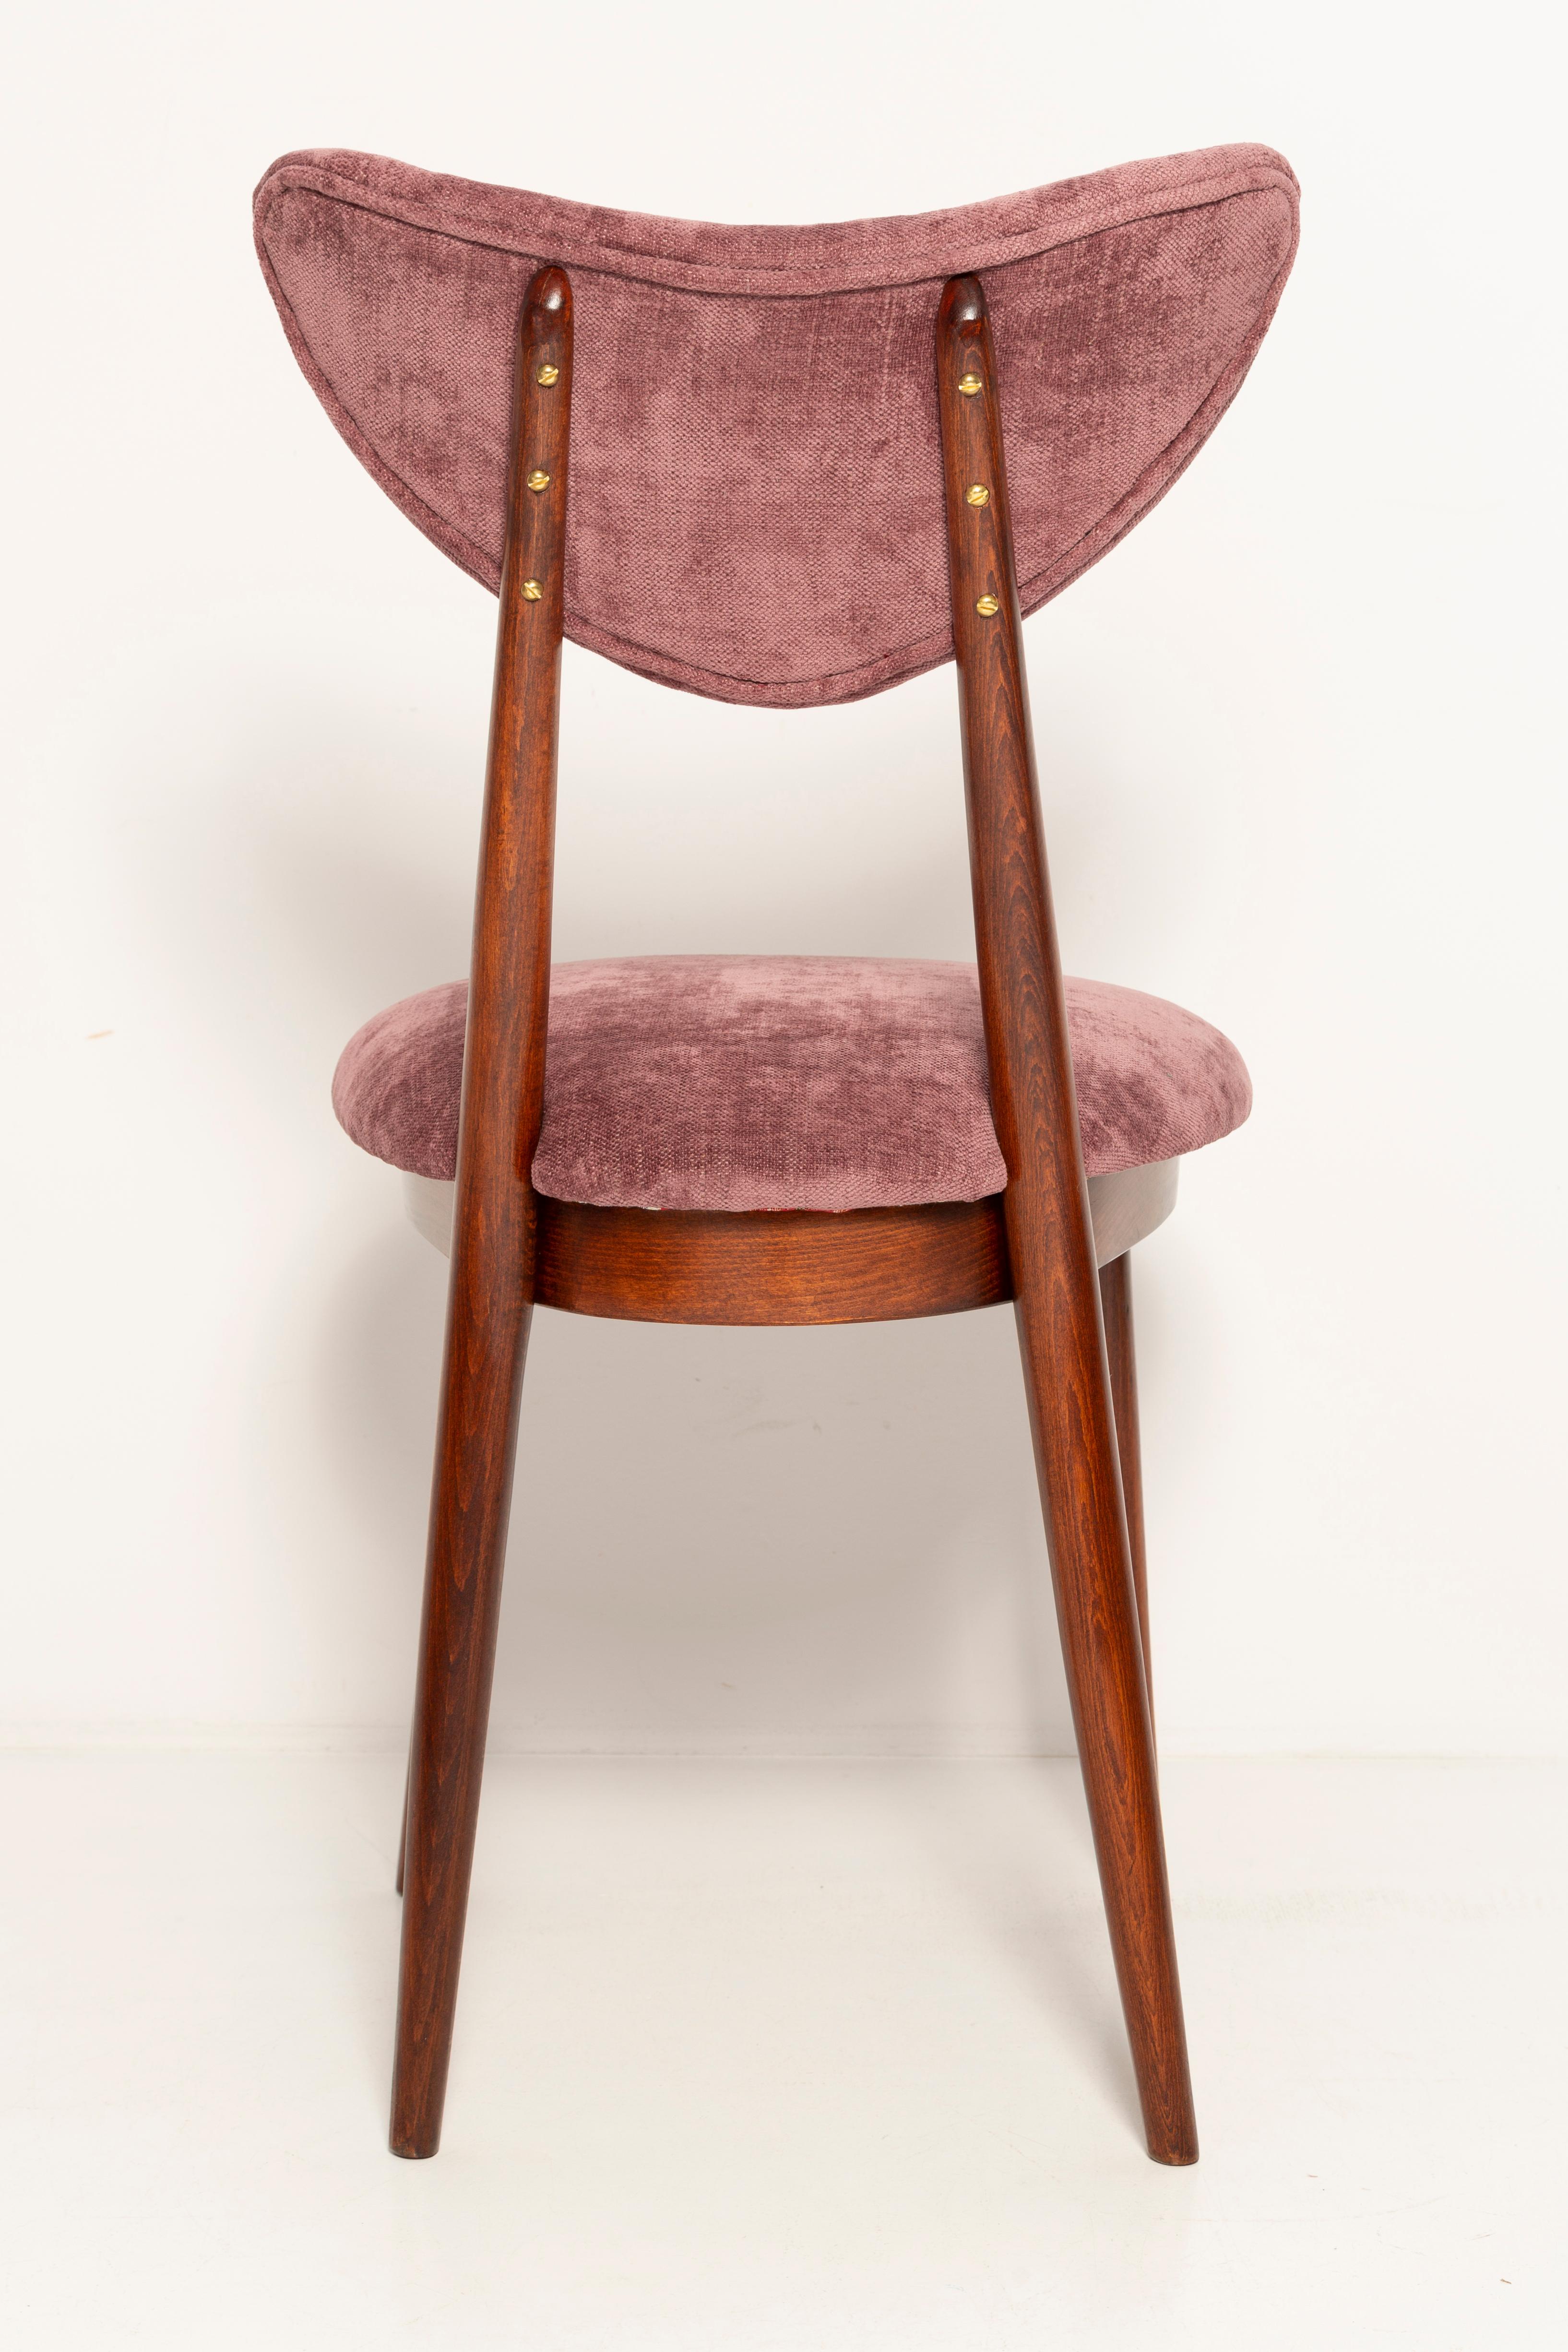 Midcentury Burgundy Pink Violet Velvet Heart Chair, Europe, 1960s For Sale 4